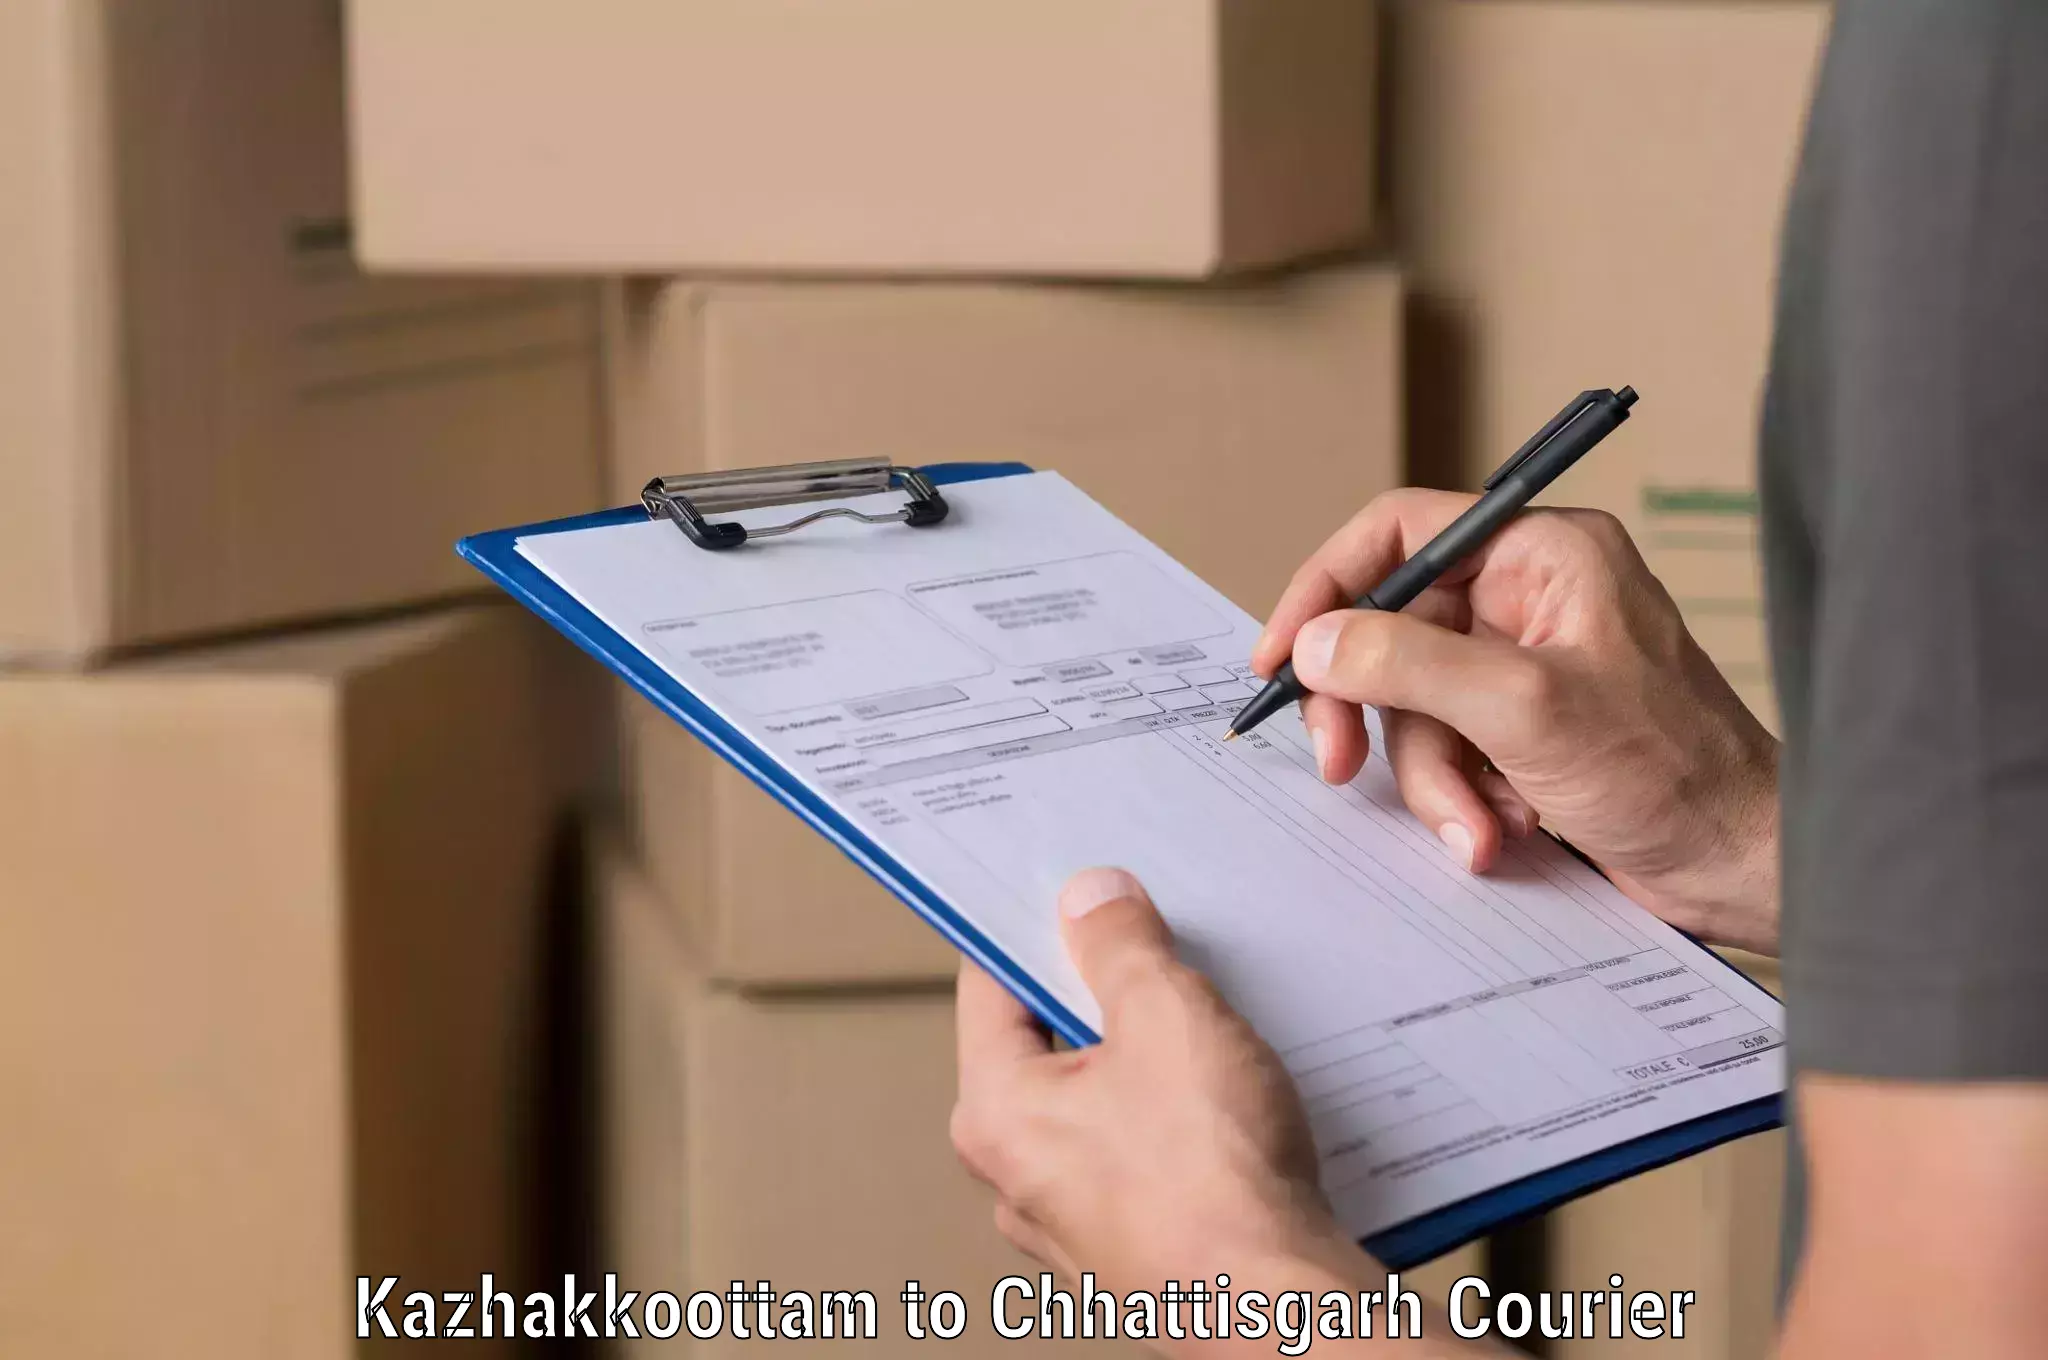 Nationwide courier service in Kazhakkoottam to Bilaspur